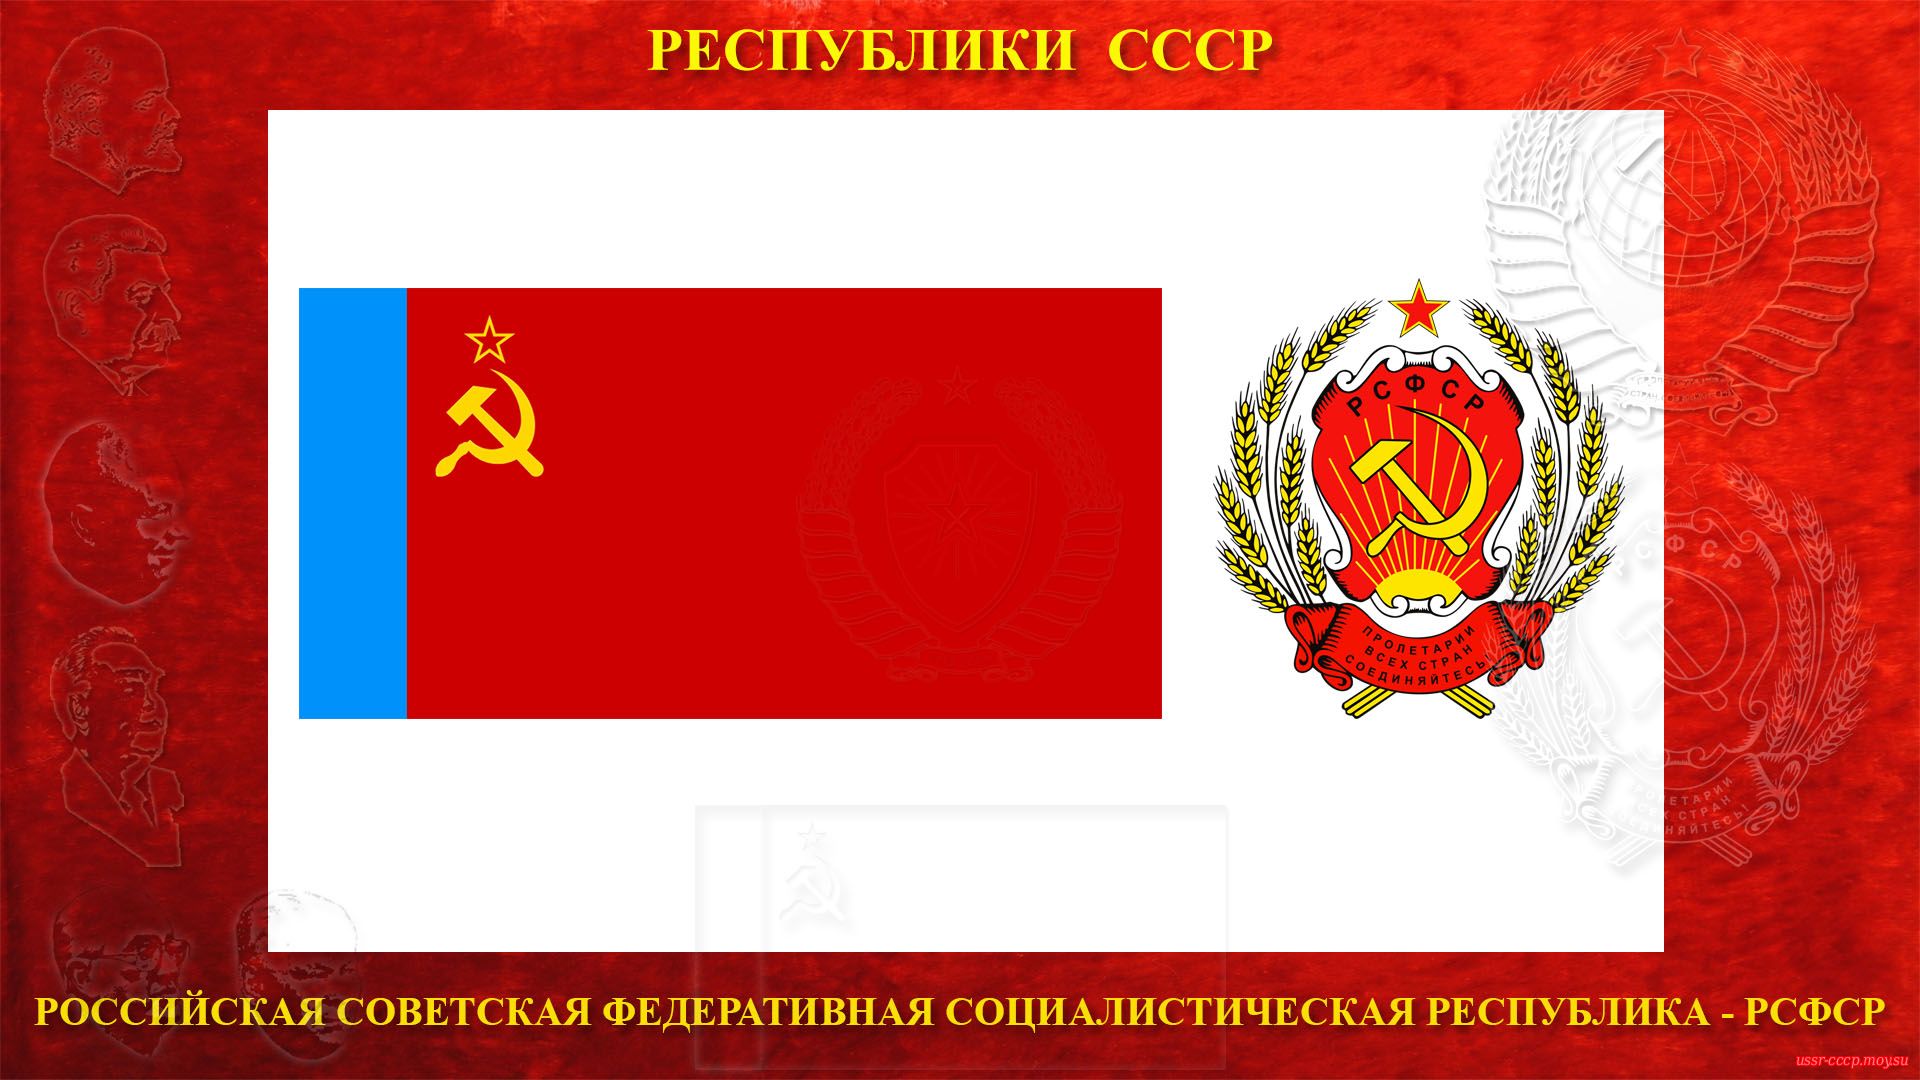 Российская Советская Федеративная Социалистическая Республика (повествование)